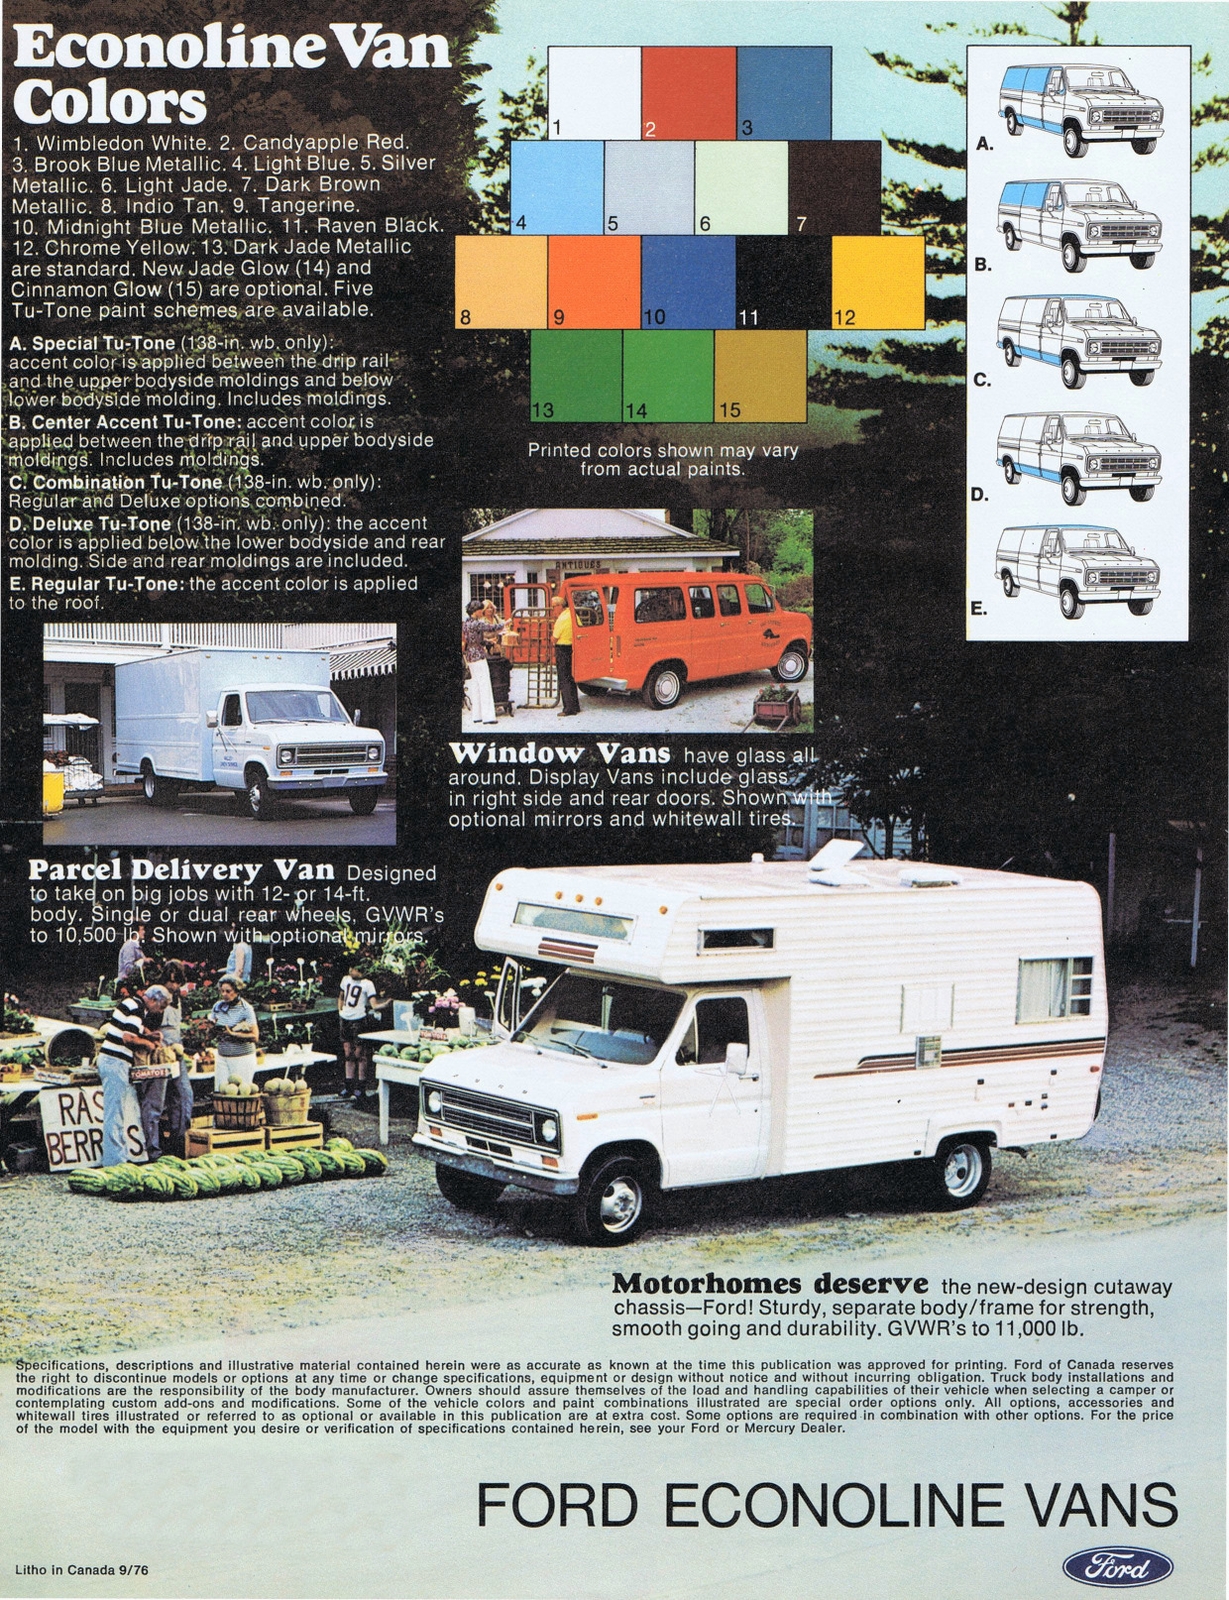 n_1977 Ford Econoline Vans (Cdn)-12.jpg